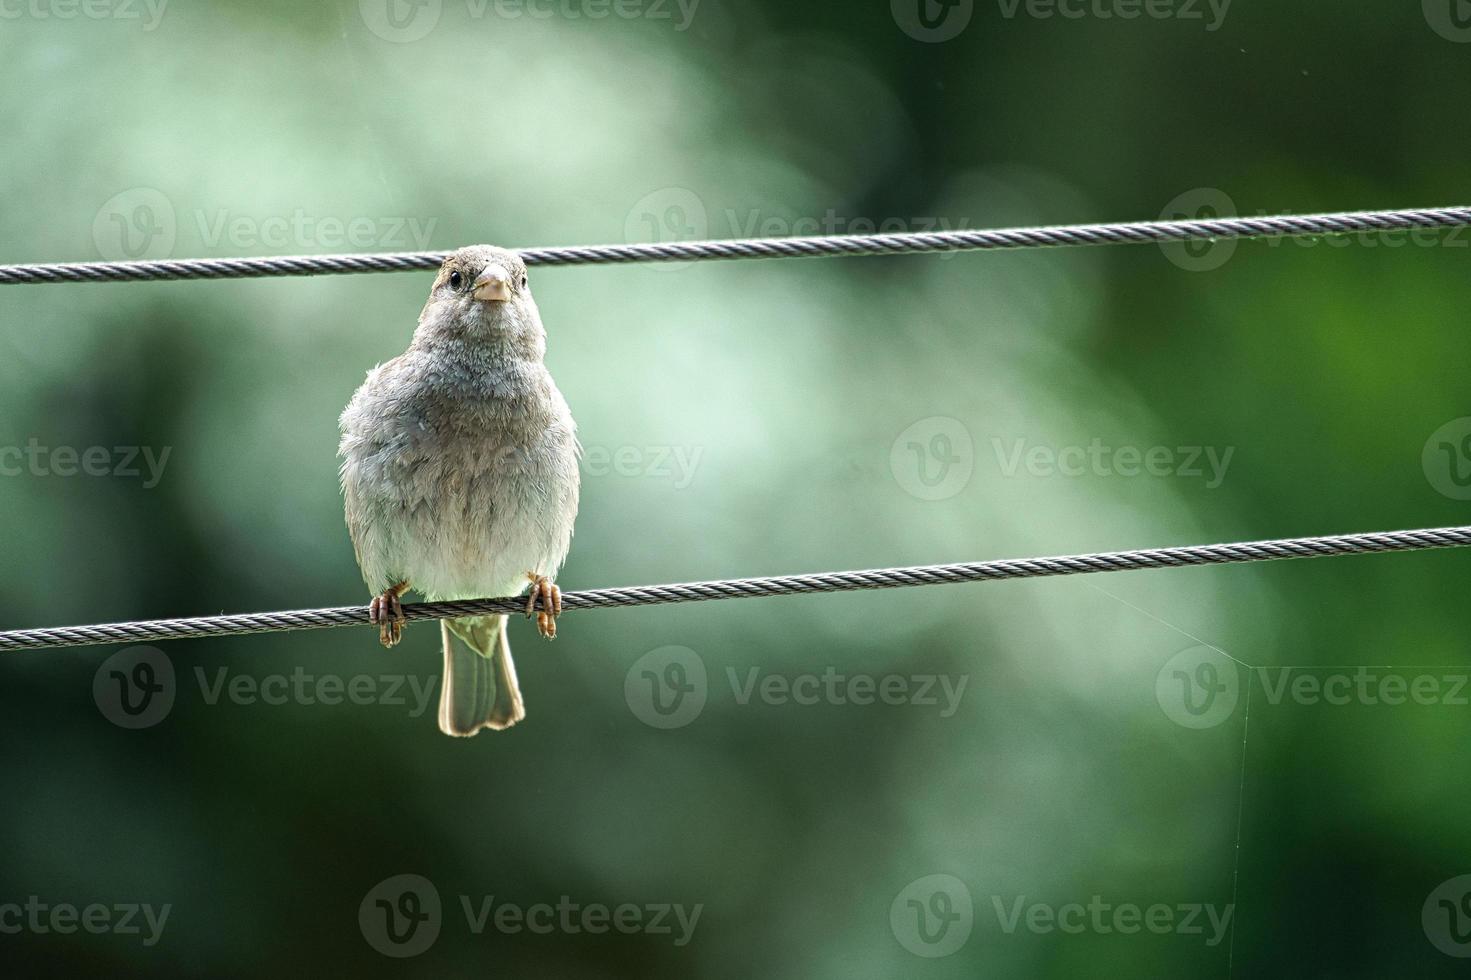 pardal marrom sentado em uma corda de fio. pequeno pássaro canoro com bela plumagem. foto